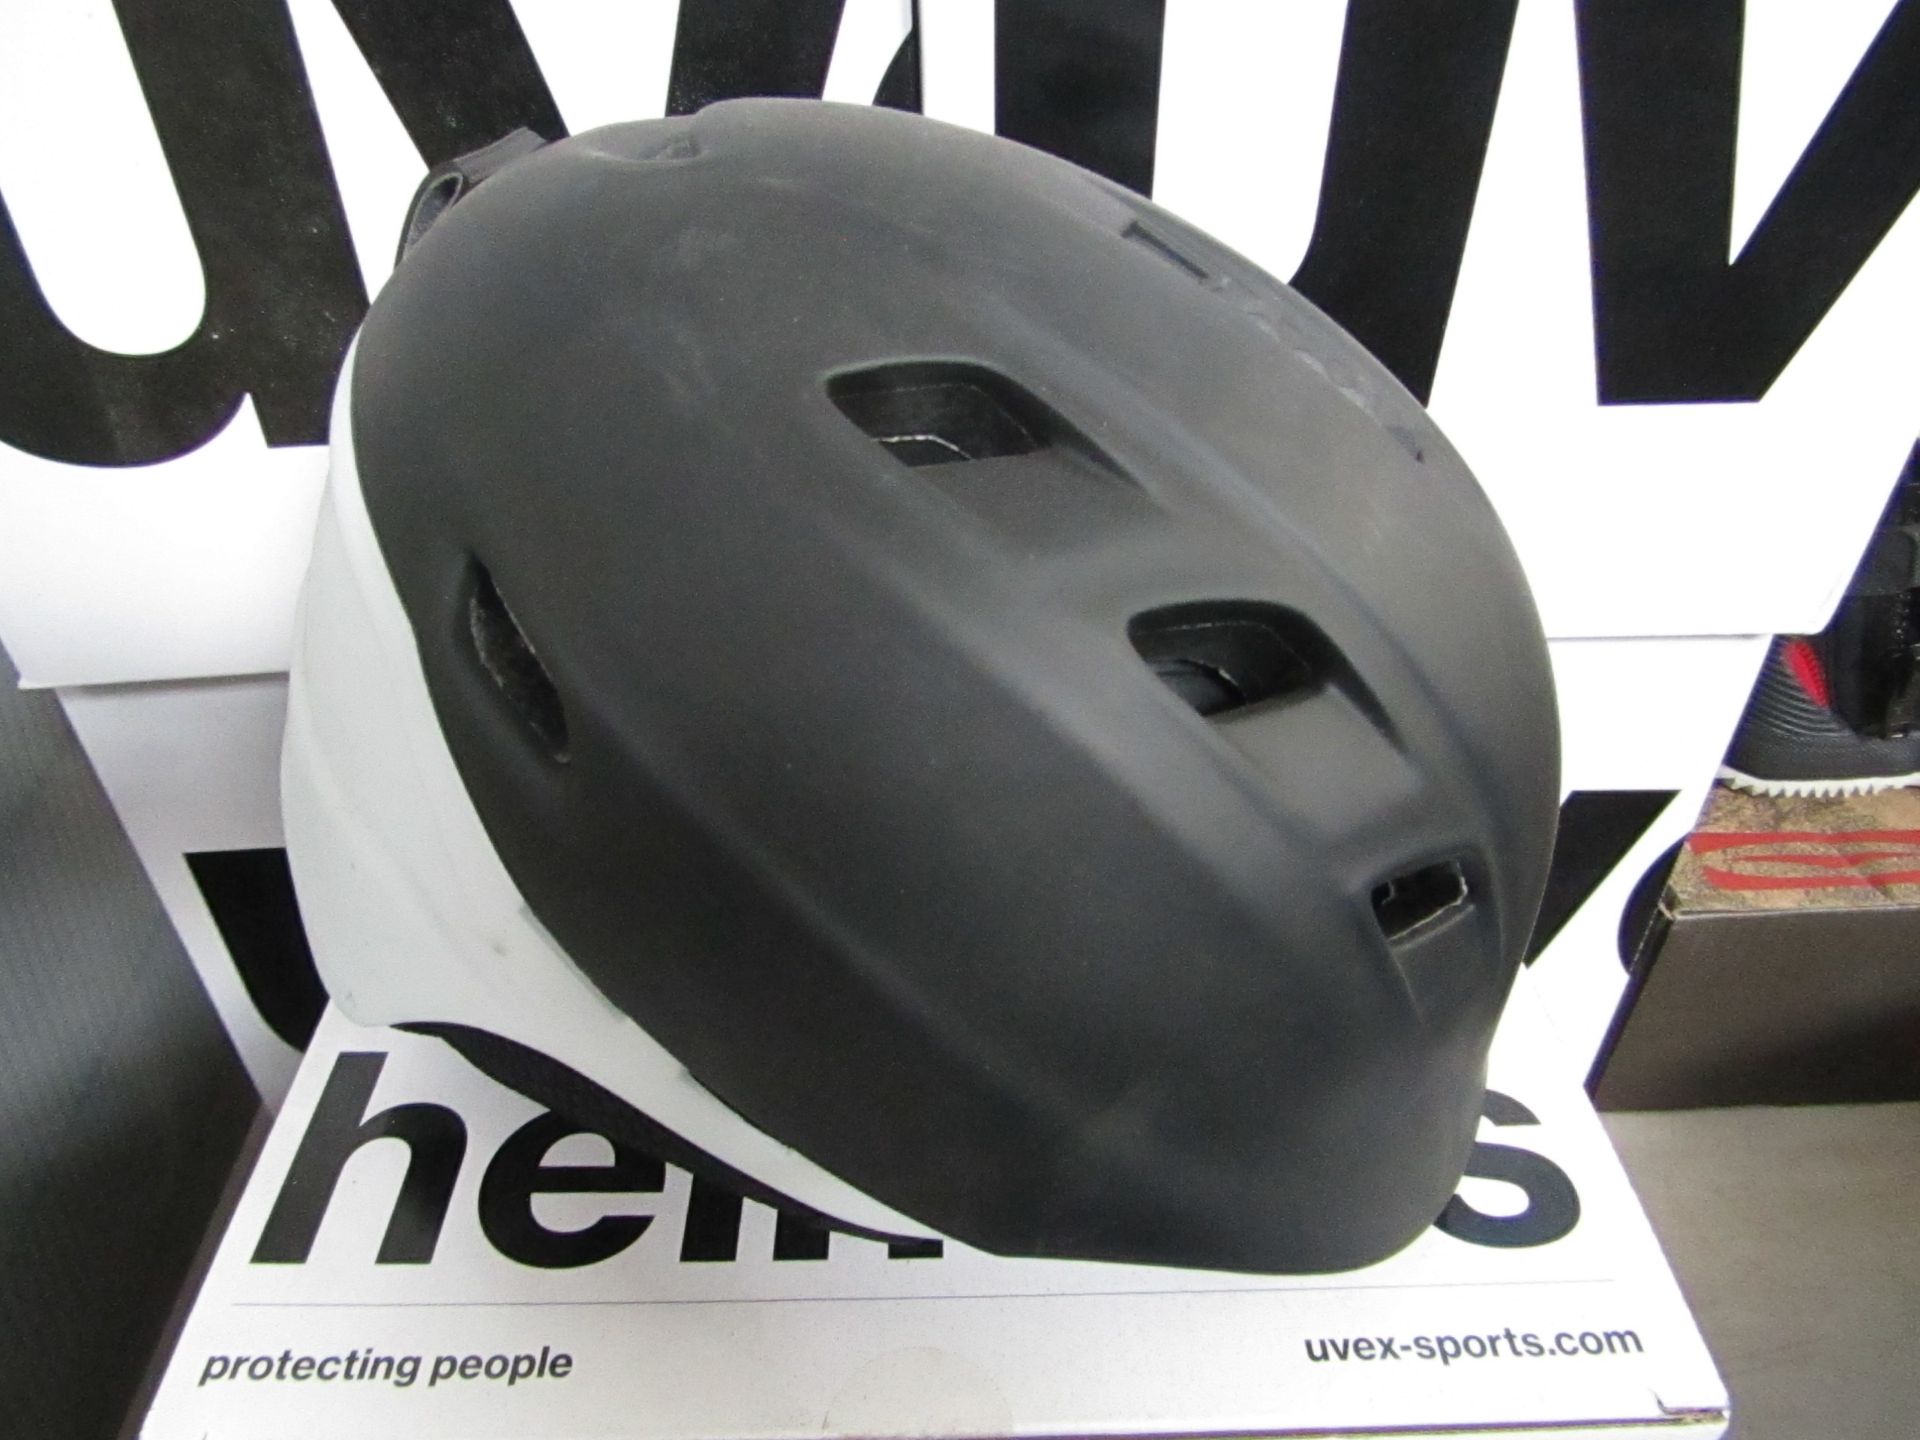 Uvex ladies Ski Helmet, size 51cm - 55cm, new and boxed